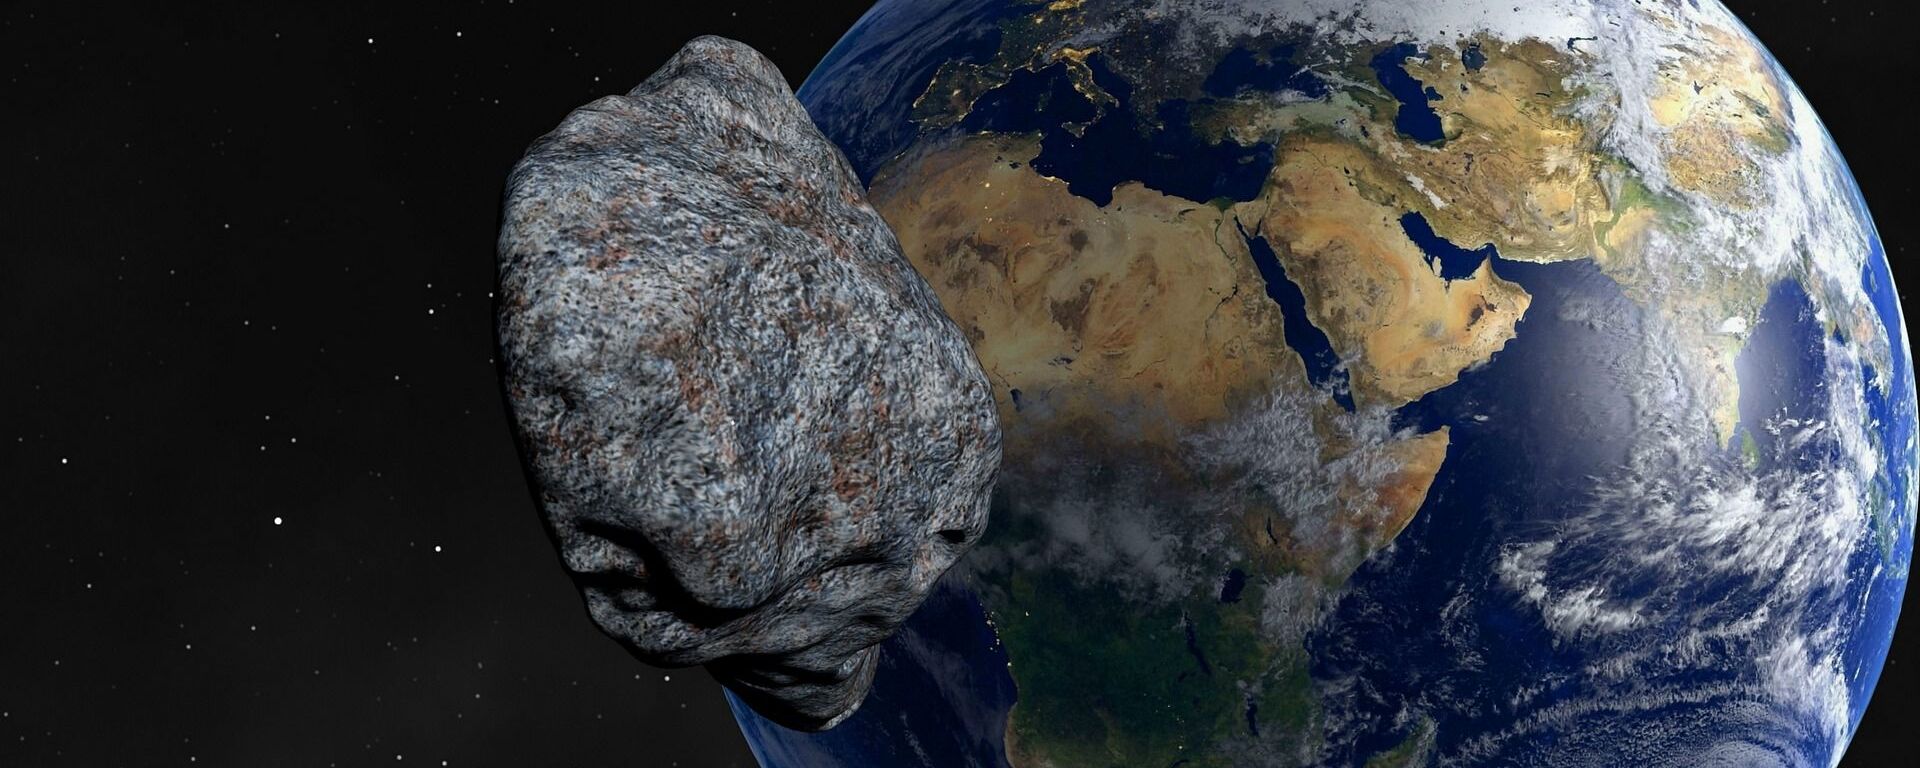 Asteroid - Sputnik International, 1920, 22.02.2021